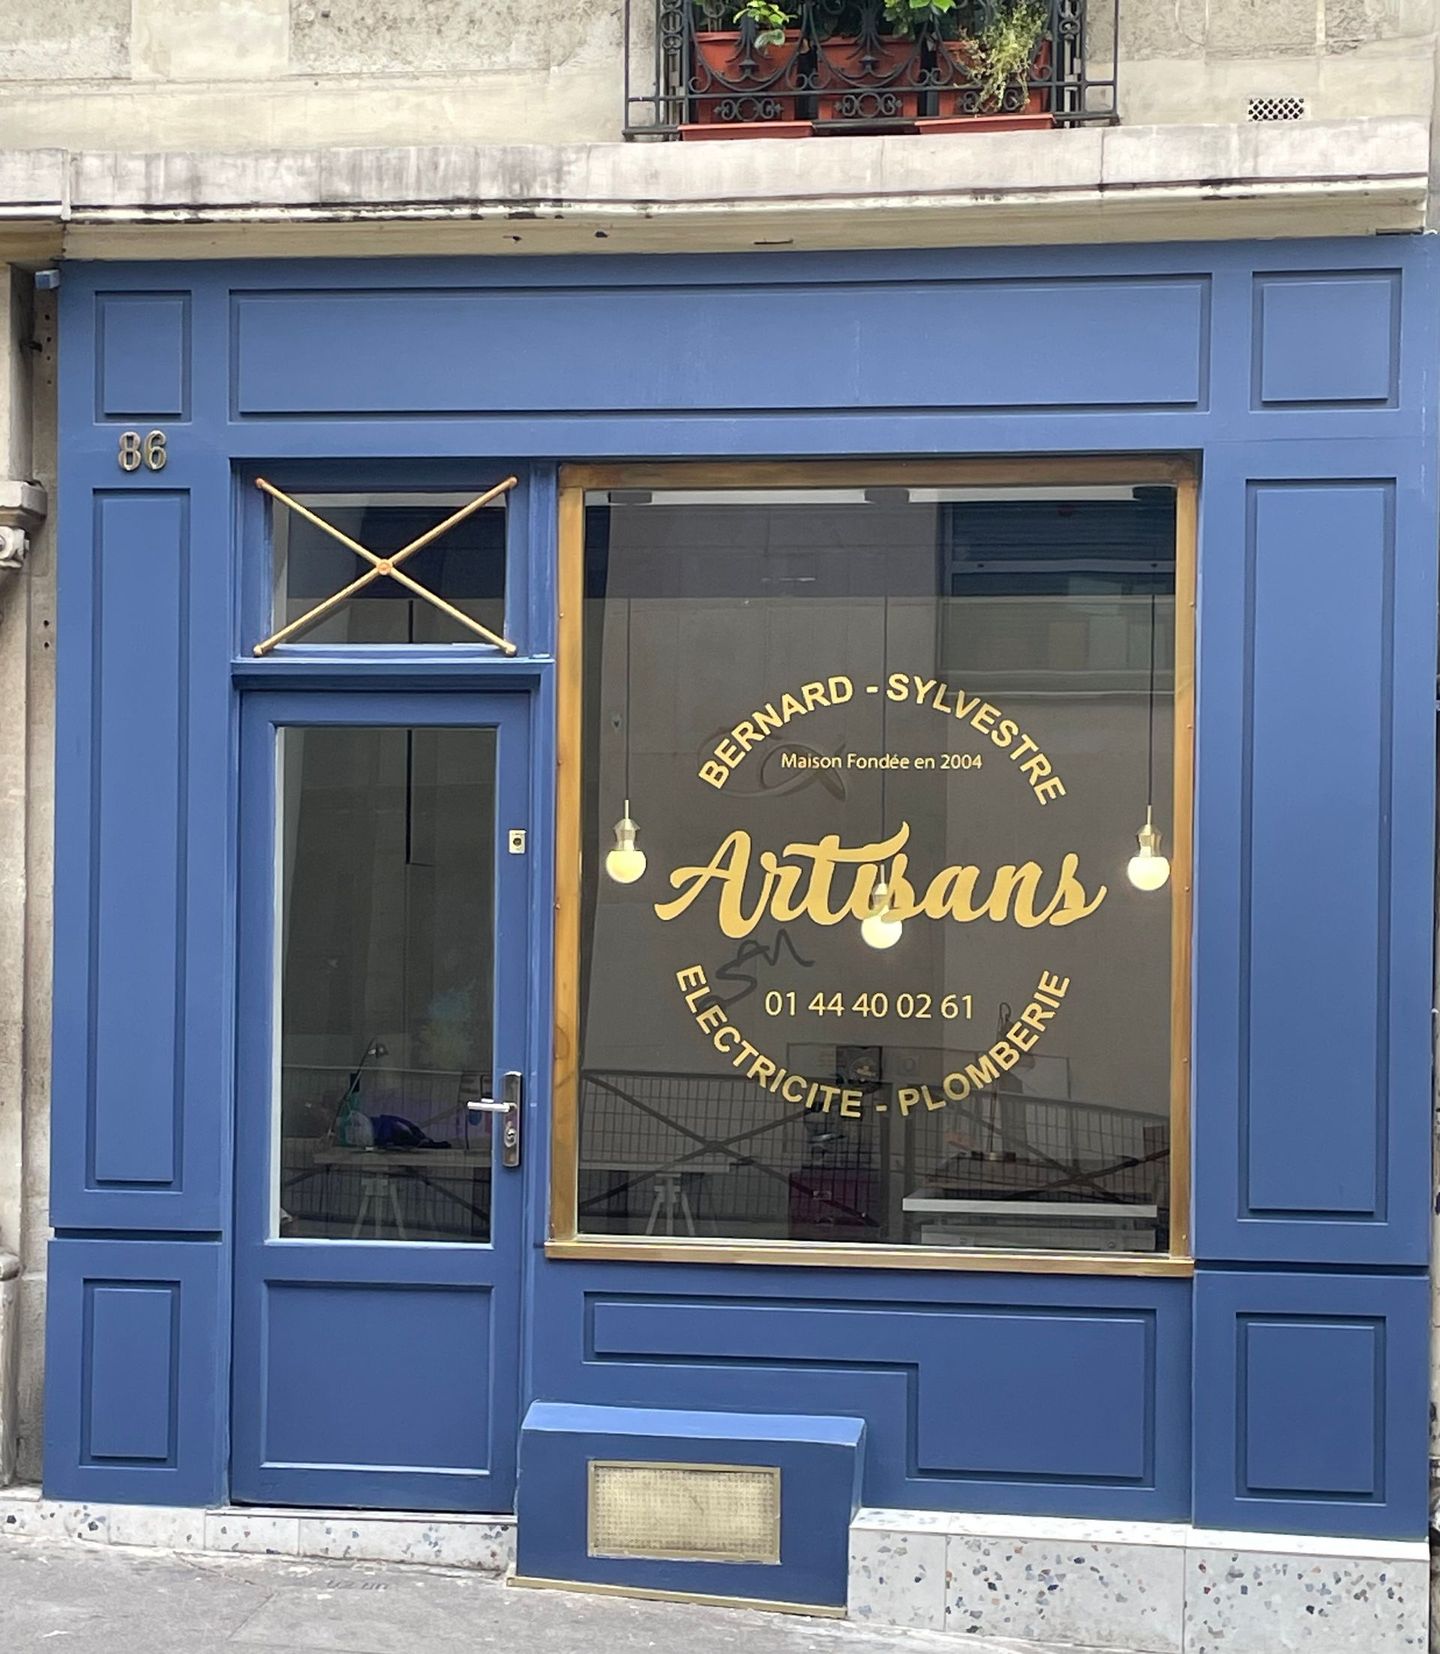 Boutique de plomberie-électricité couleur bleu et doré au 86 rue Marcadet Paris 18-Artisans-Bernard-et Sylvestre